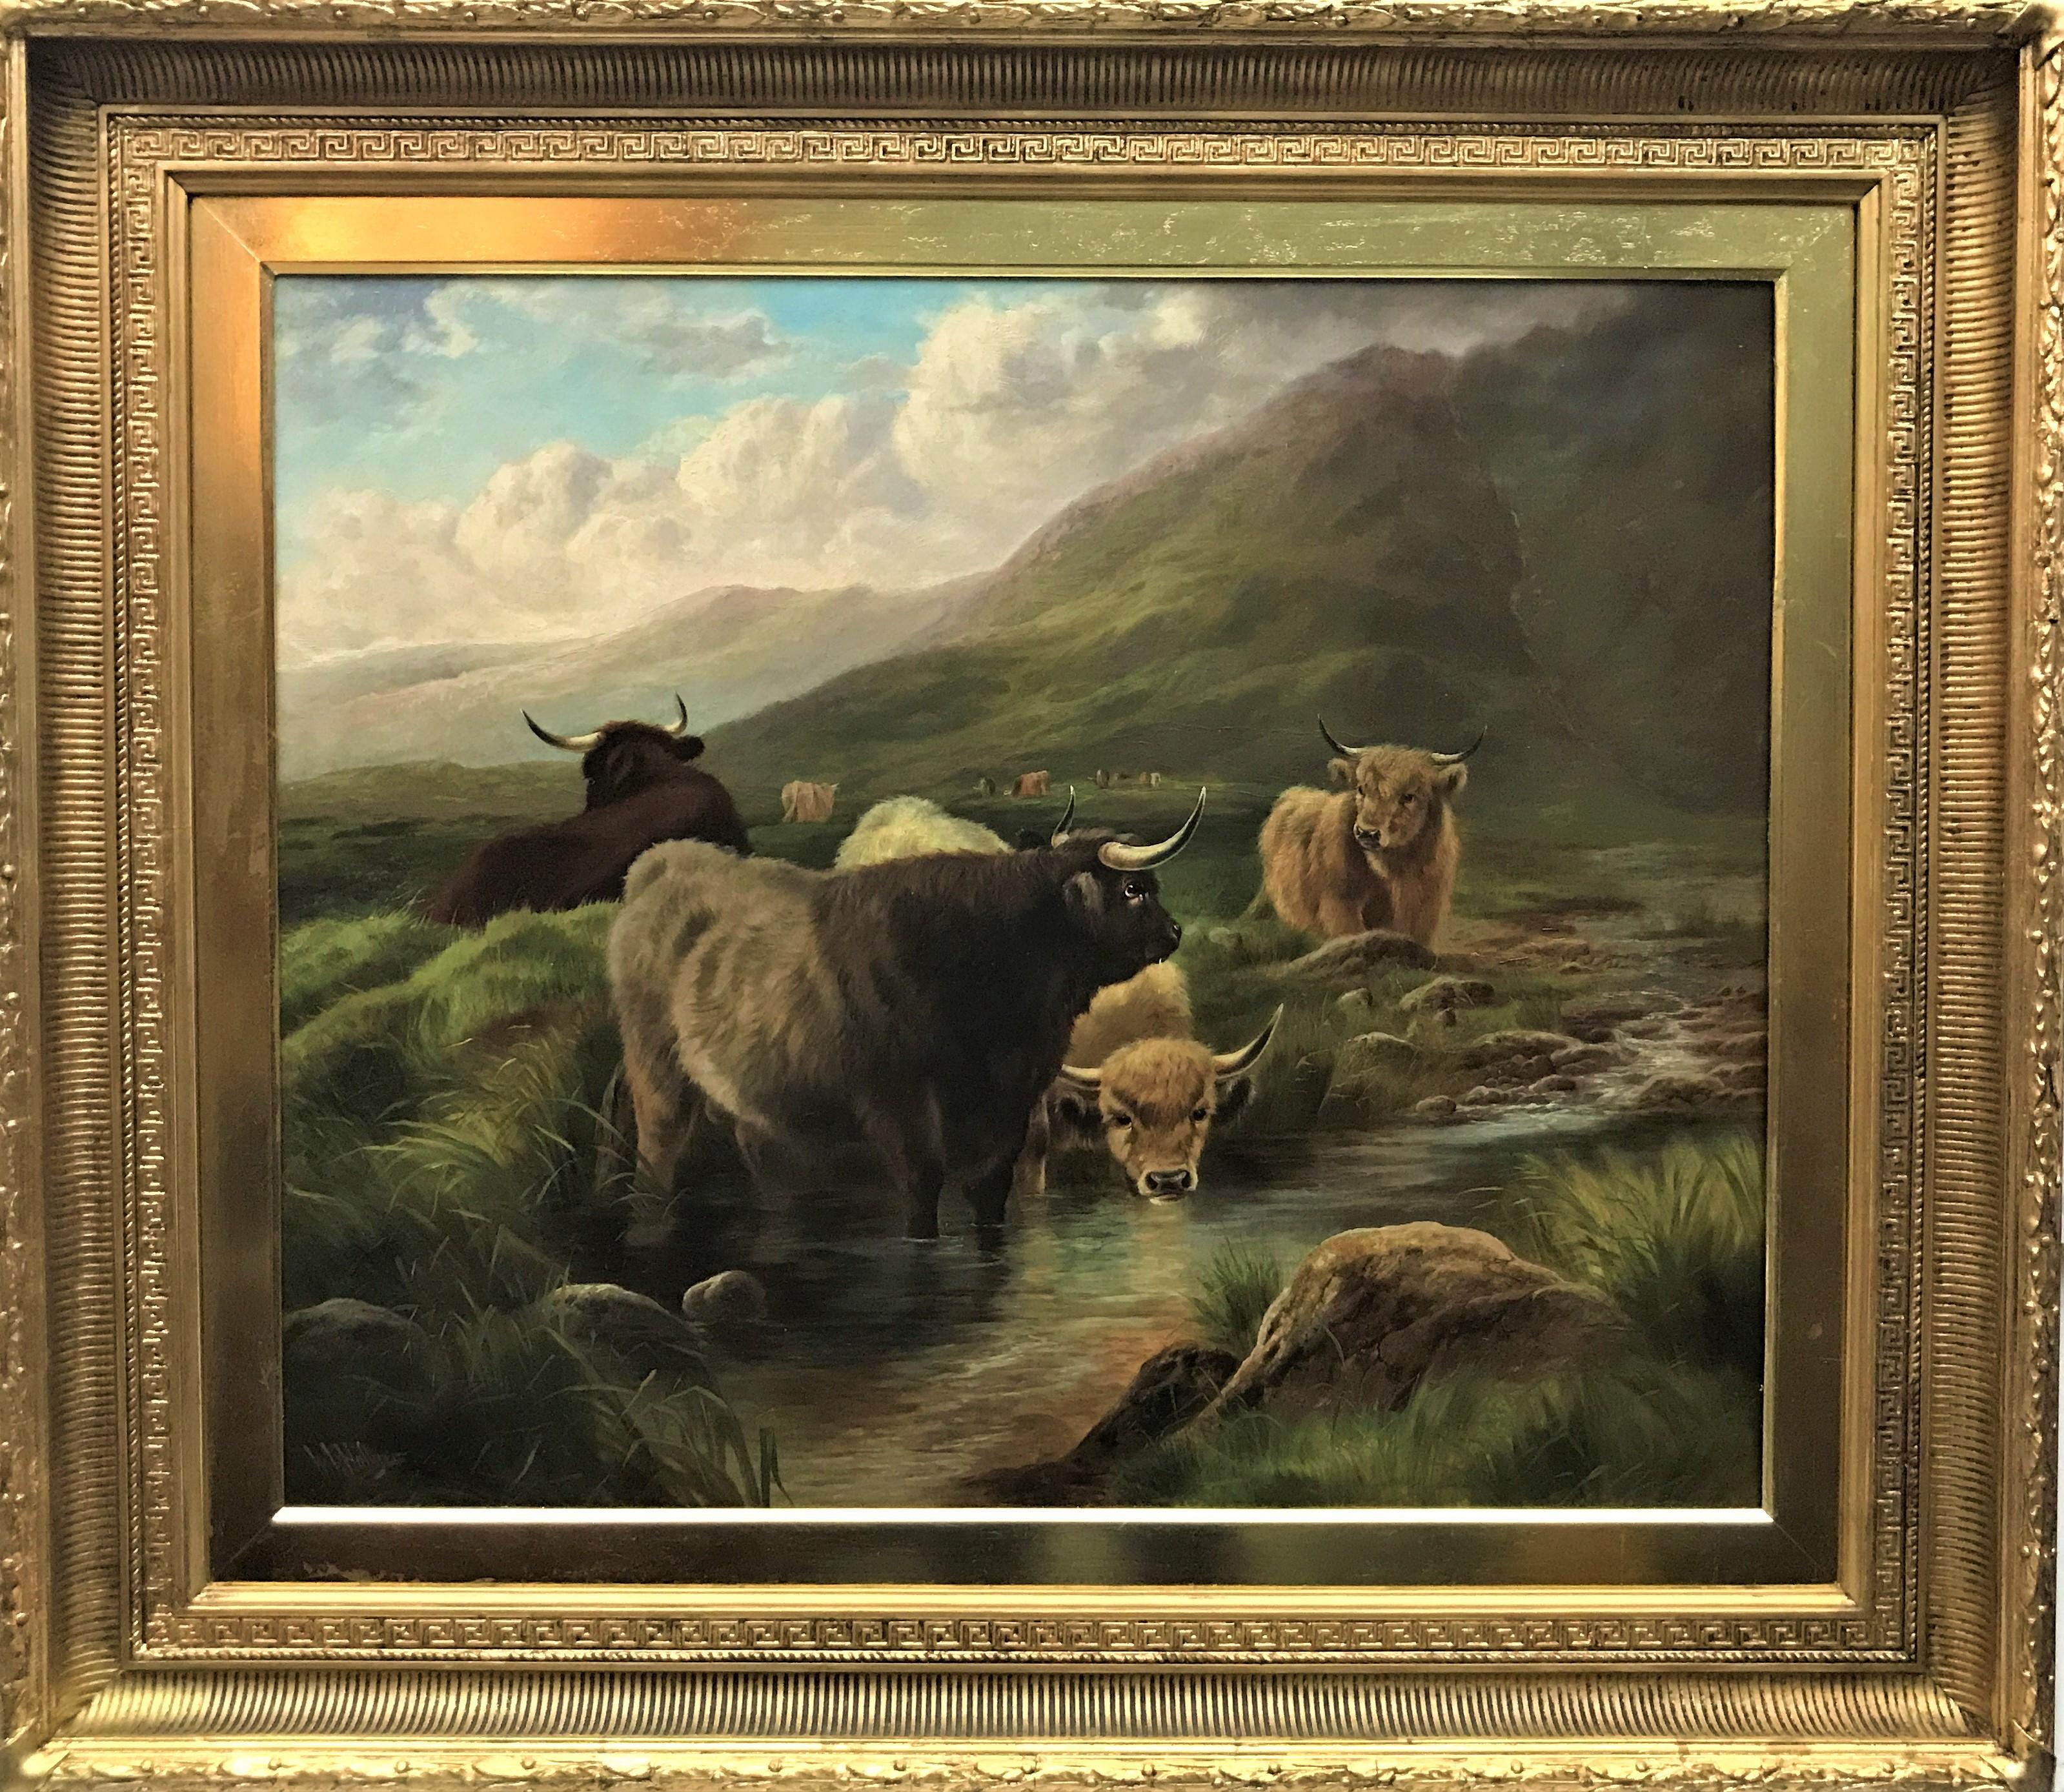 Bouteille des Highlands dans un Glen de montagne, huile sur toile originale, Royaume-Uni du 19e siècle - Painting de William Perring Hollyer